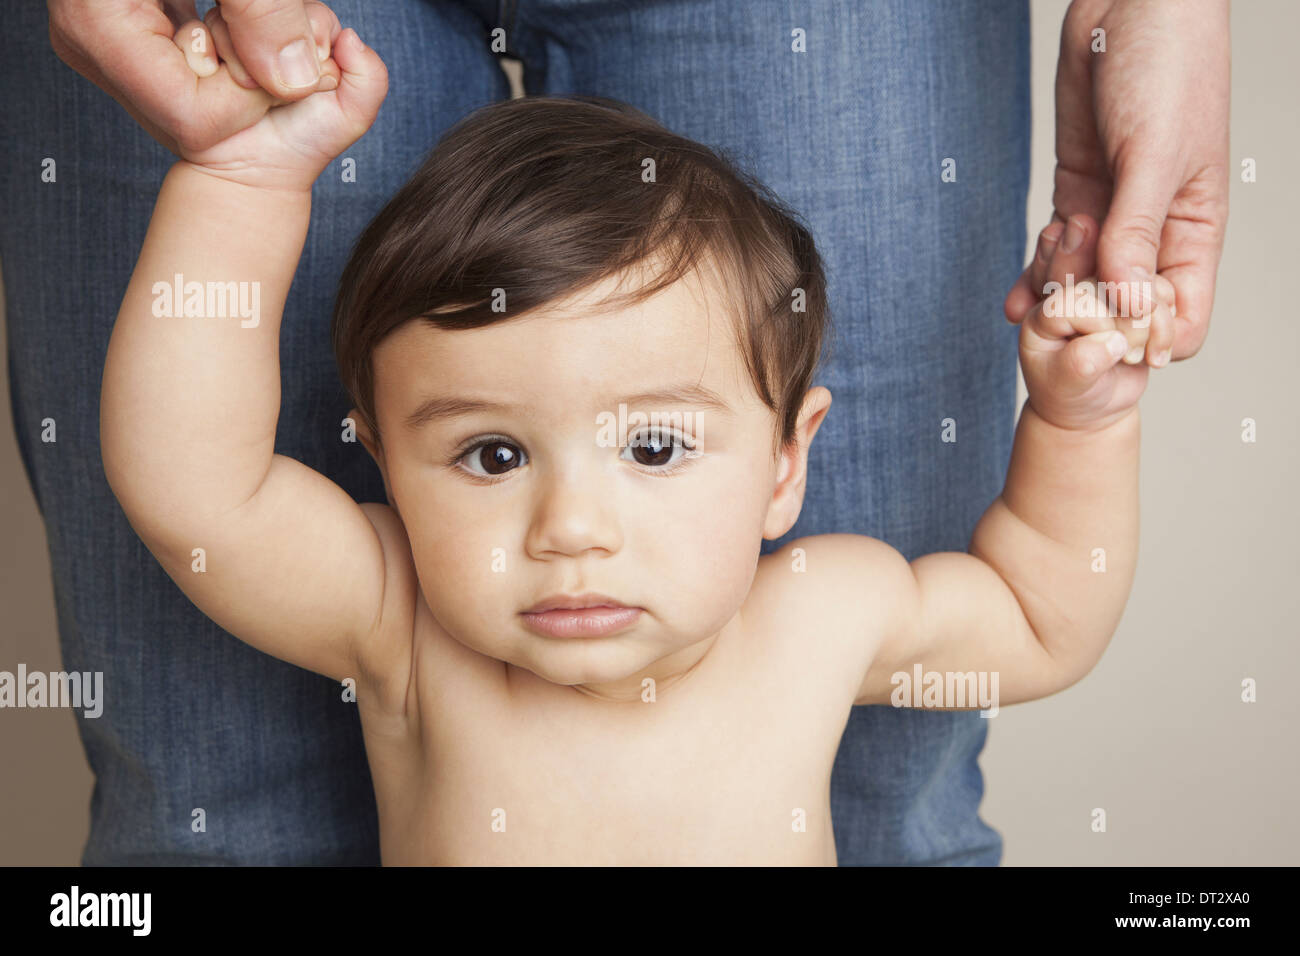 Ein 8 Monate altes Baby junge seiner Eltern Händchenhalten und balancing aufrecht Stockfoto